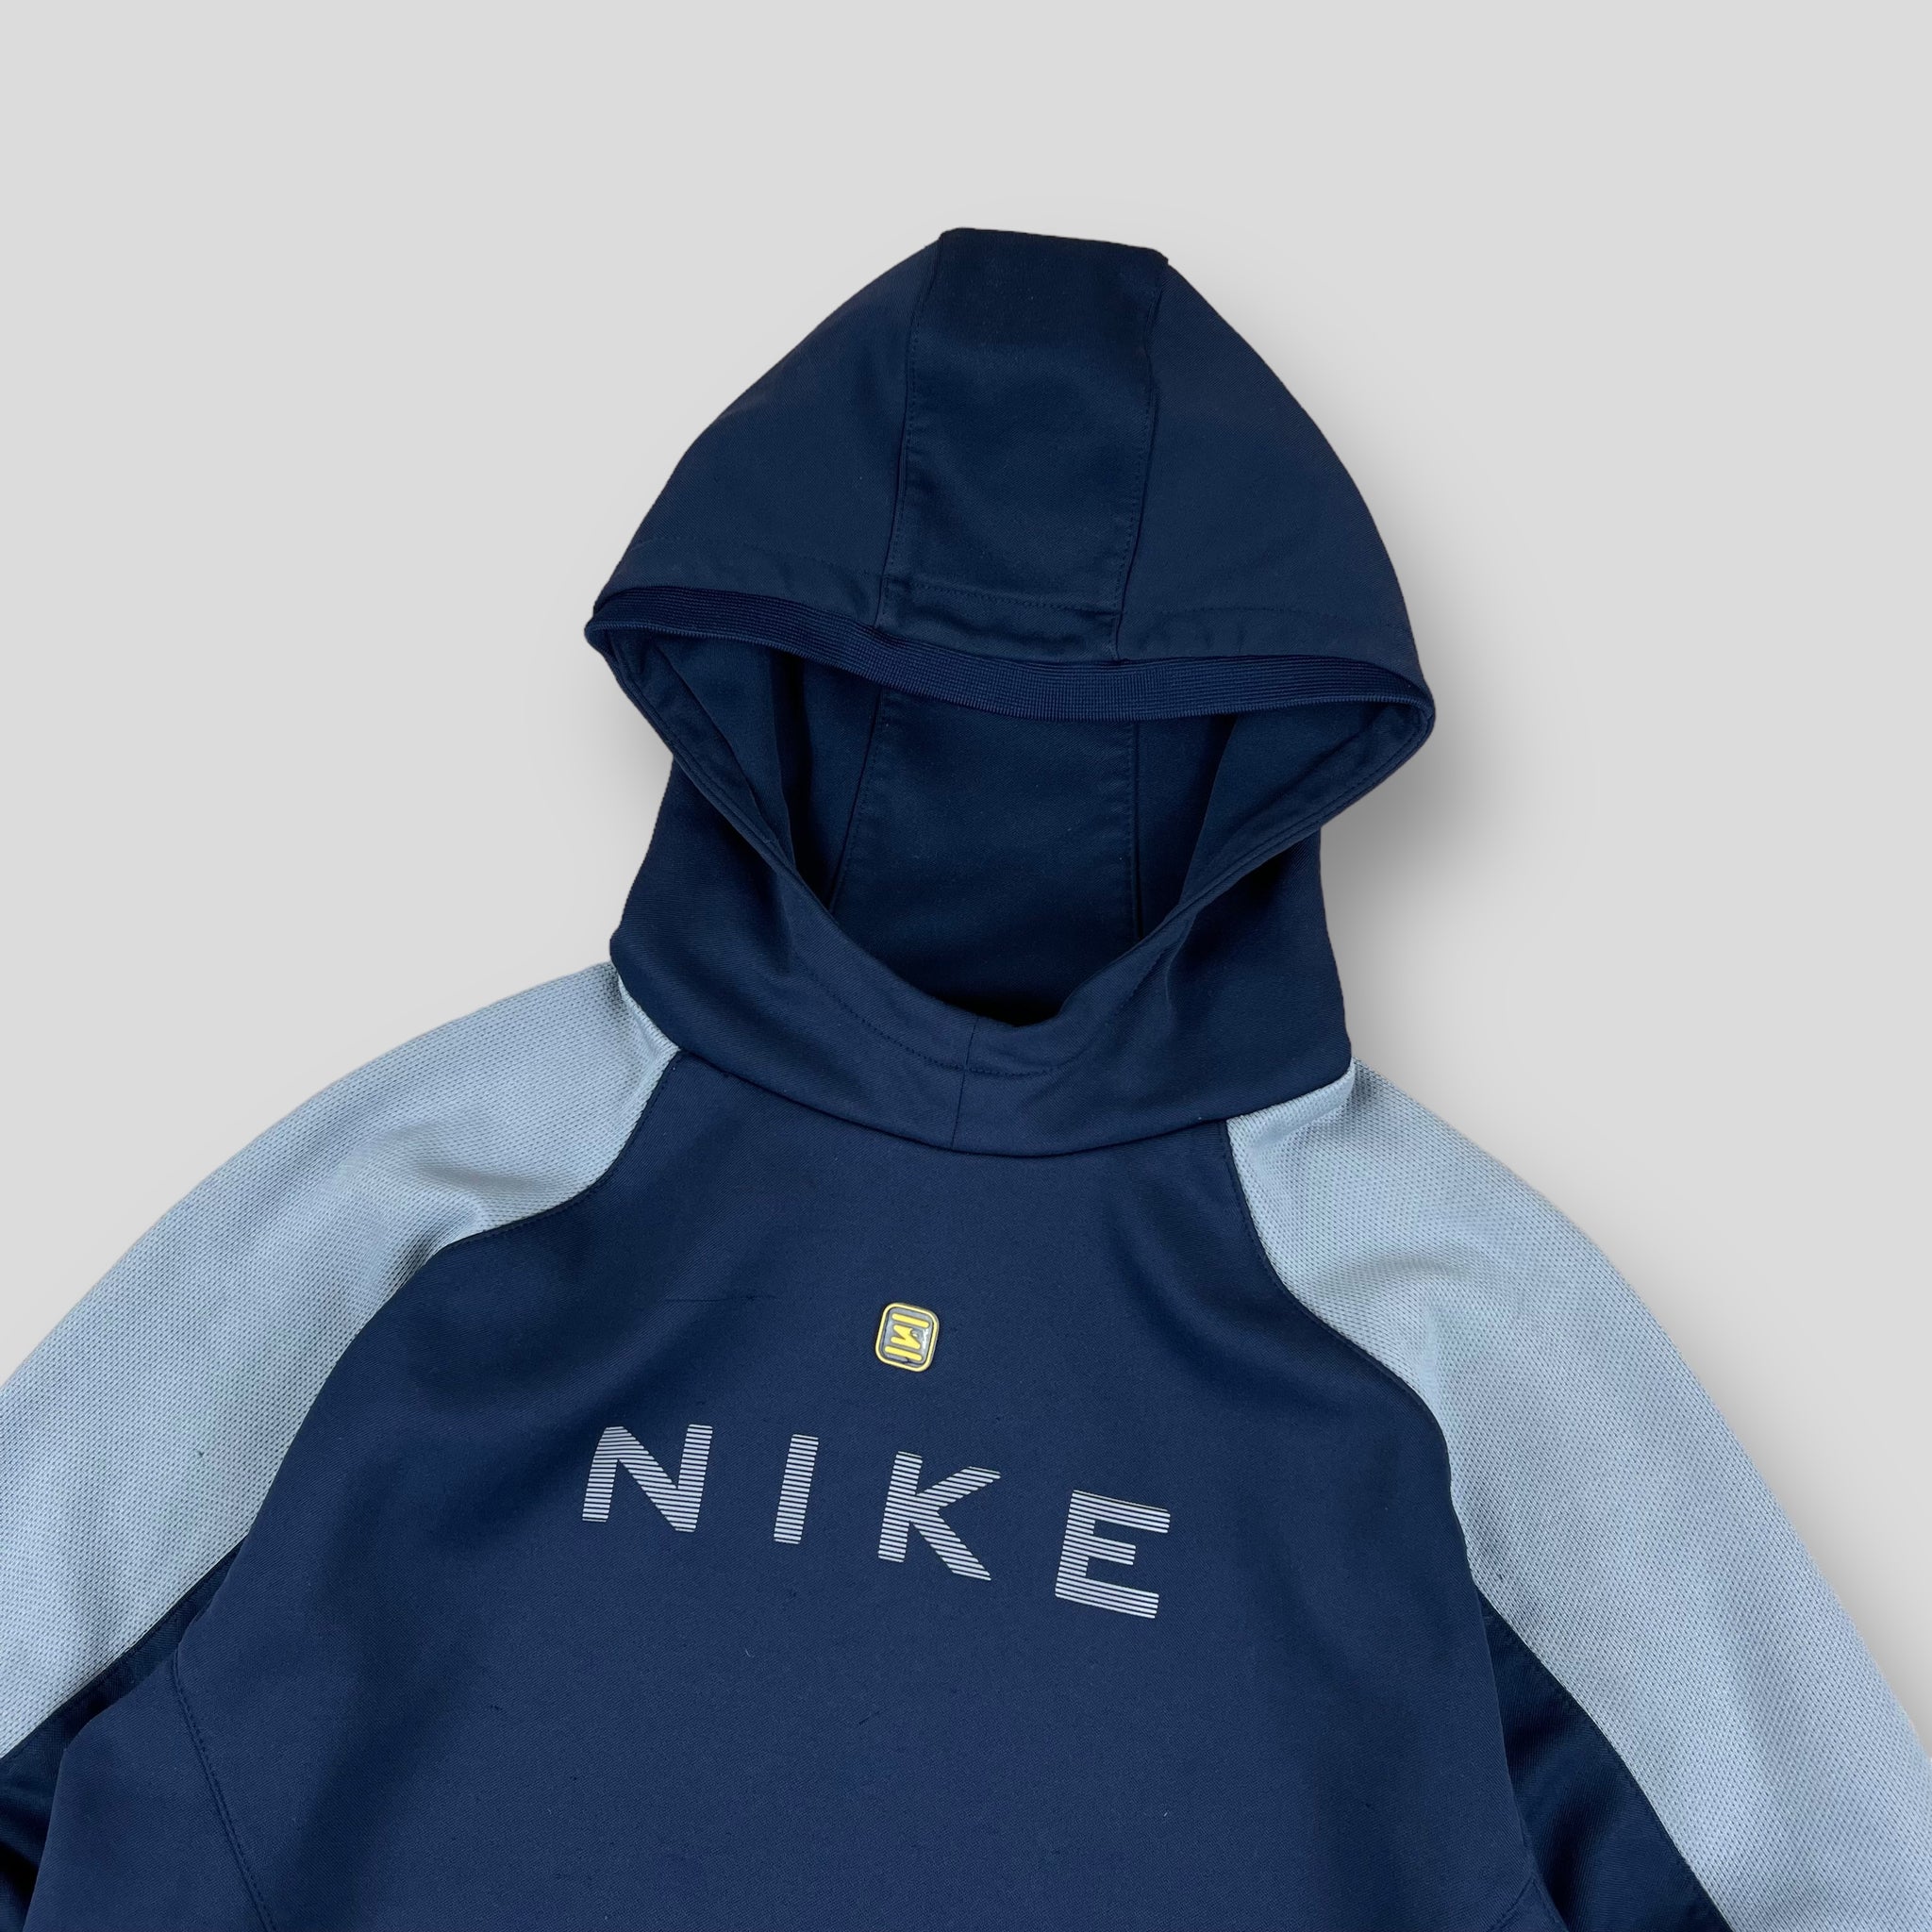 Vintage Nike hoodie